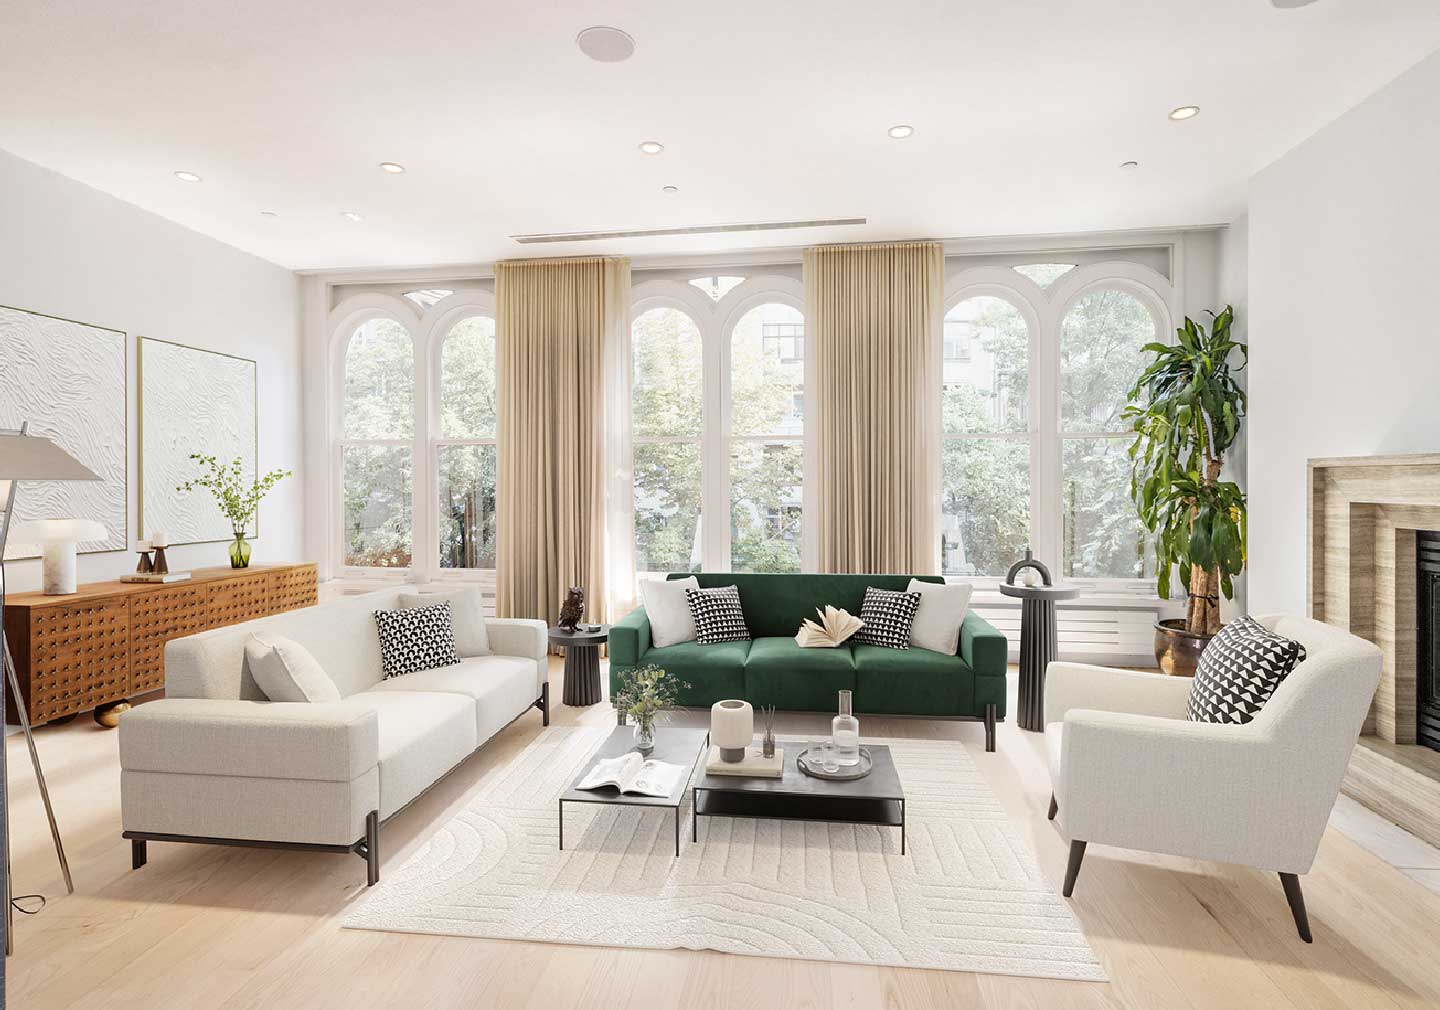 Modern contemporary living room interior design